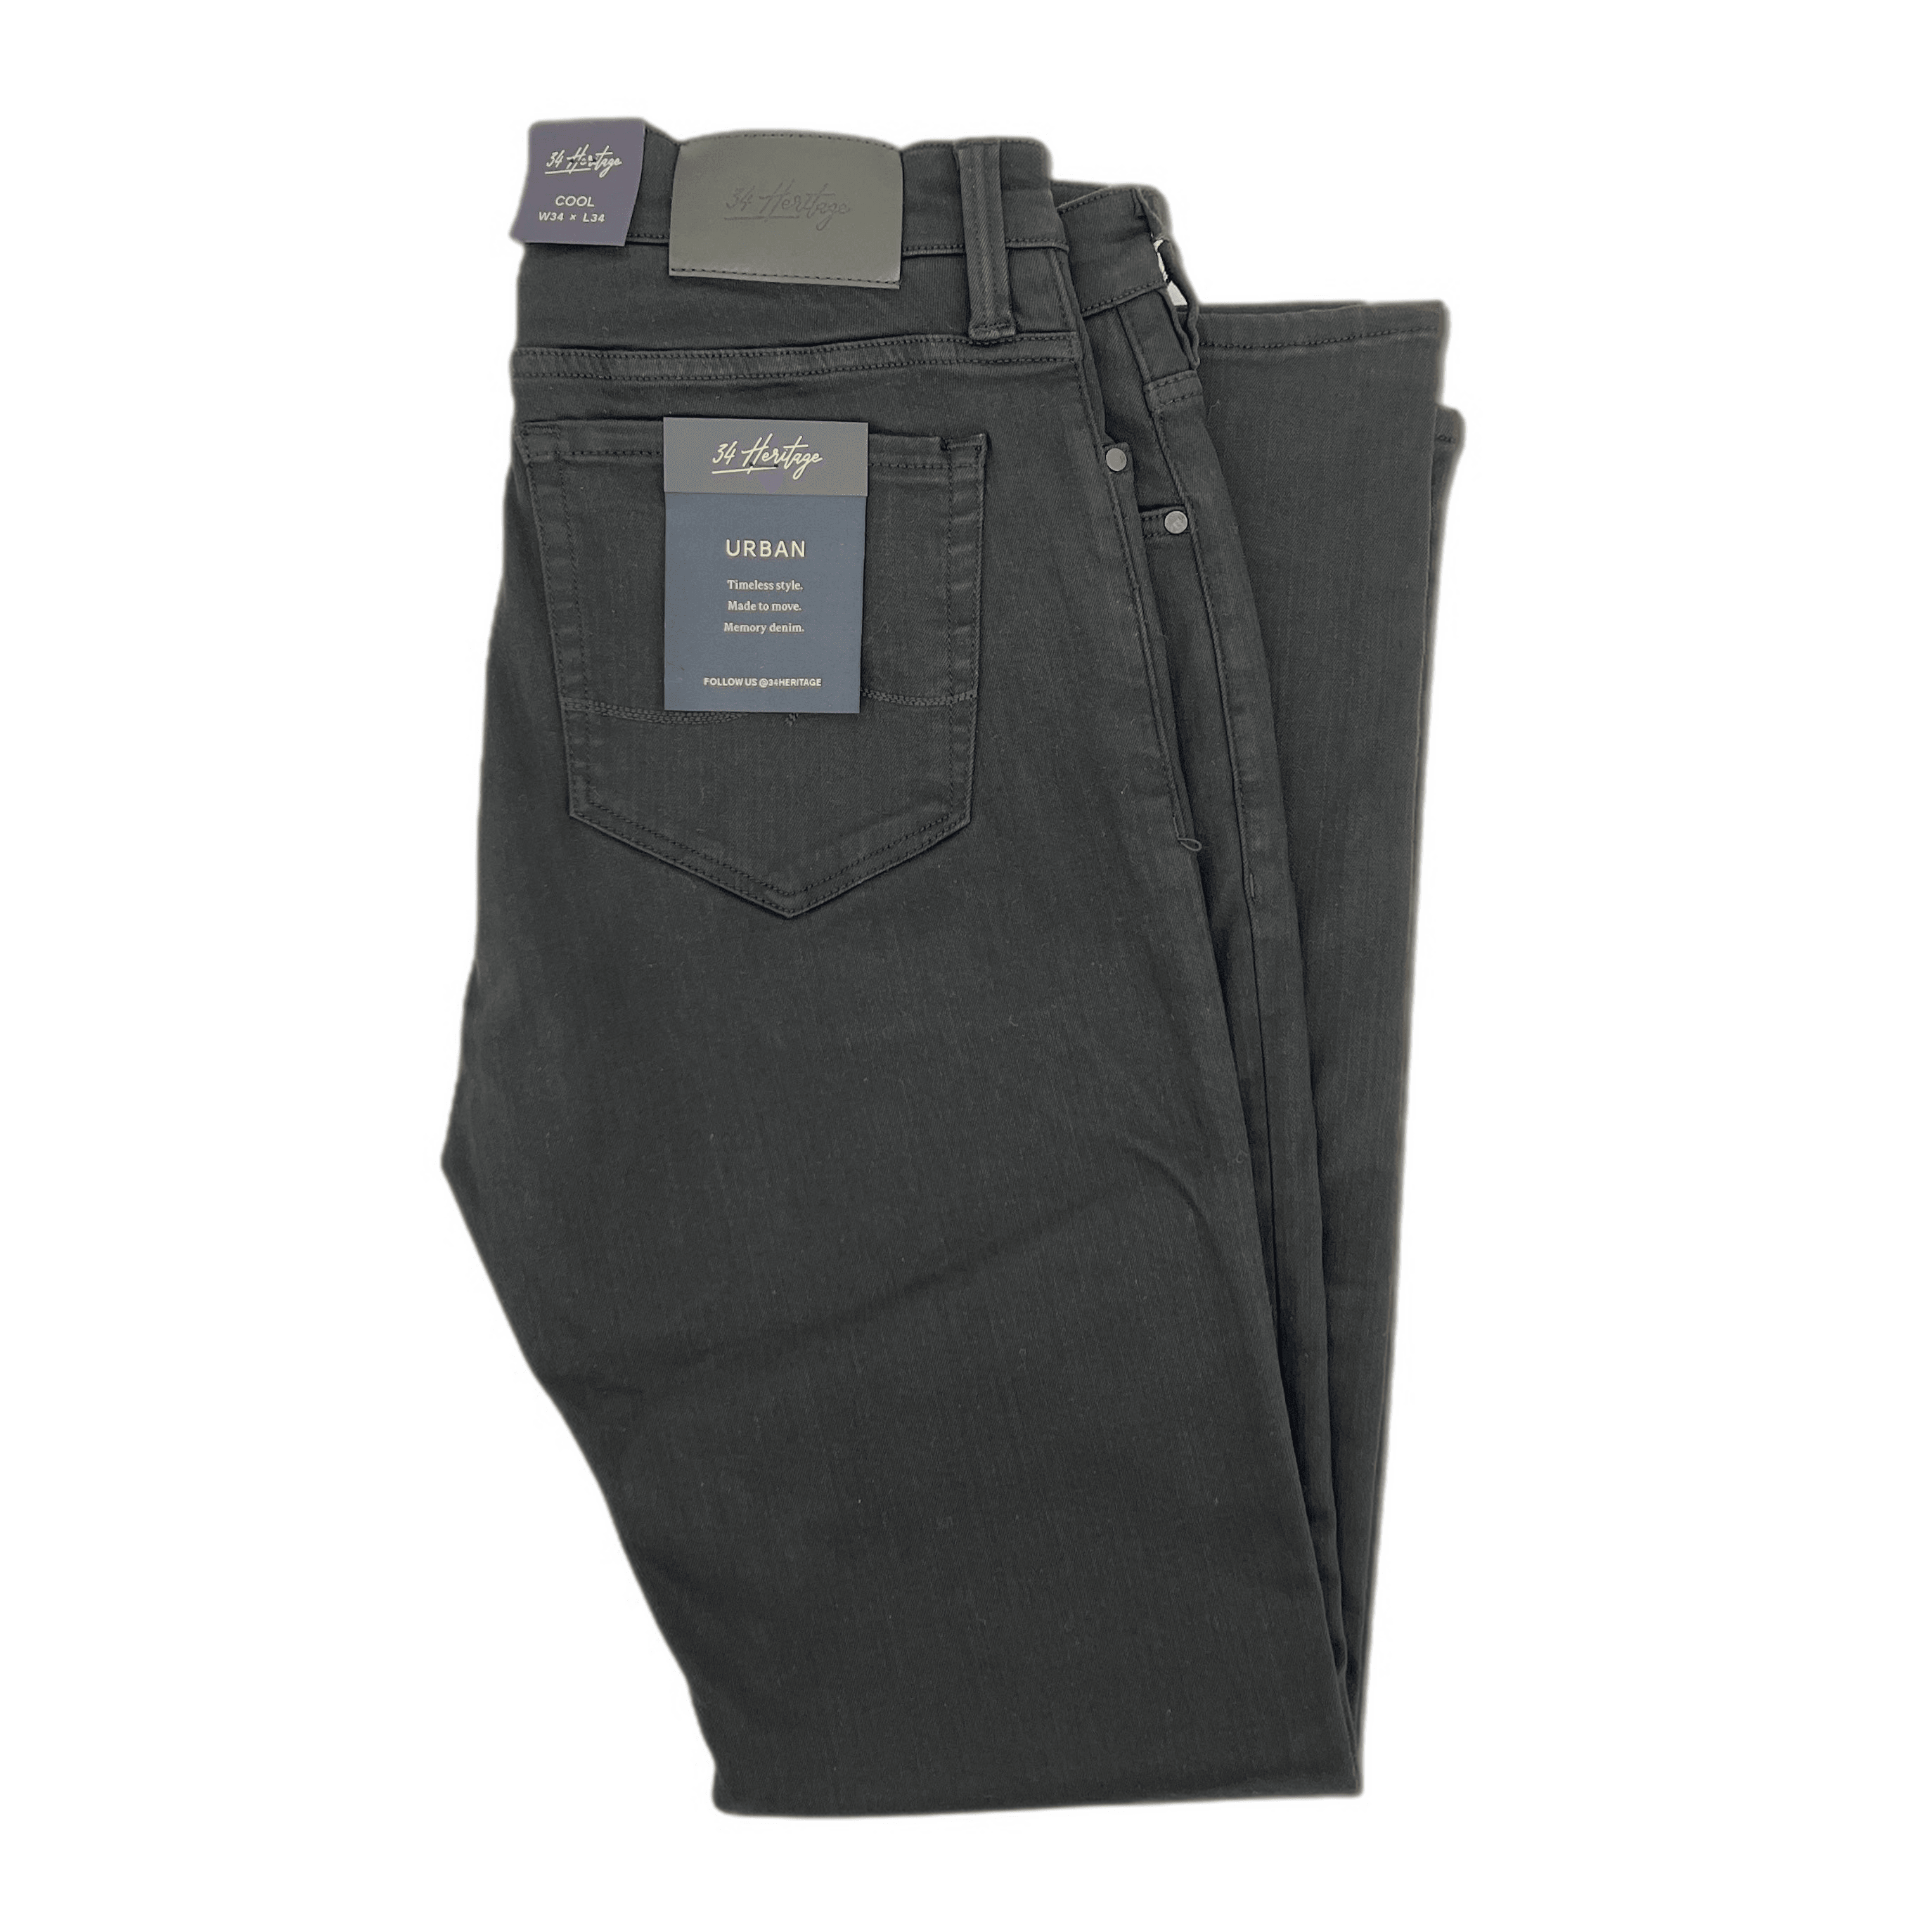 Laflamme- Jeans noir Urban - 34 Heritage